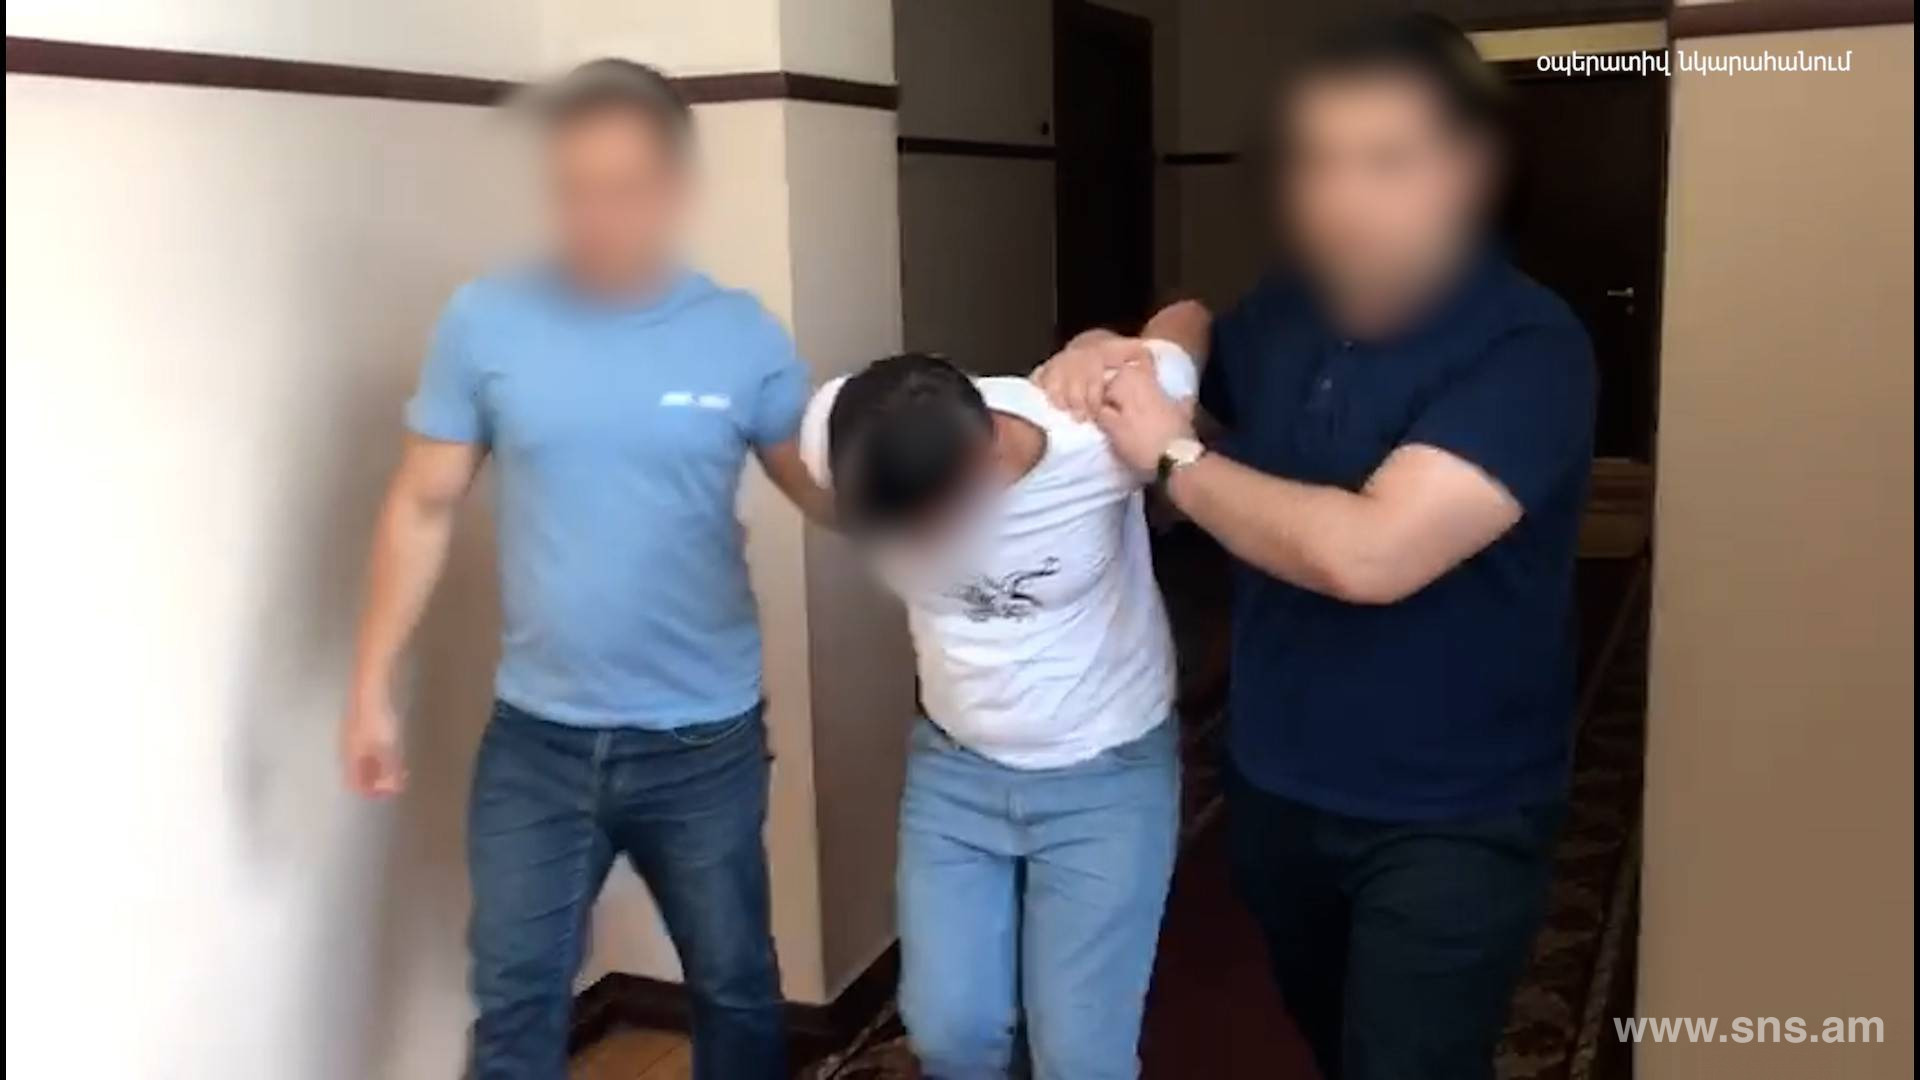 СНБ Армении выявила очередной случай госизмены со стороны военнослужащего (видео) 